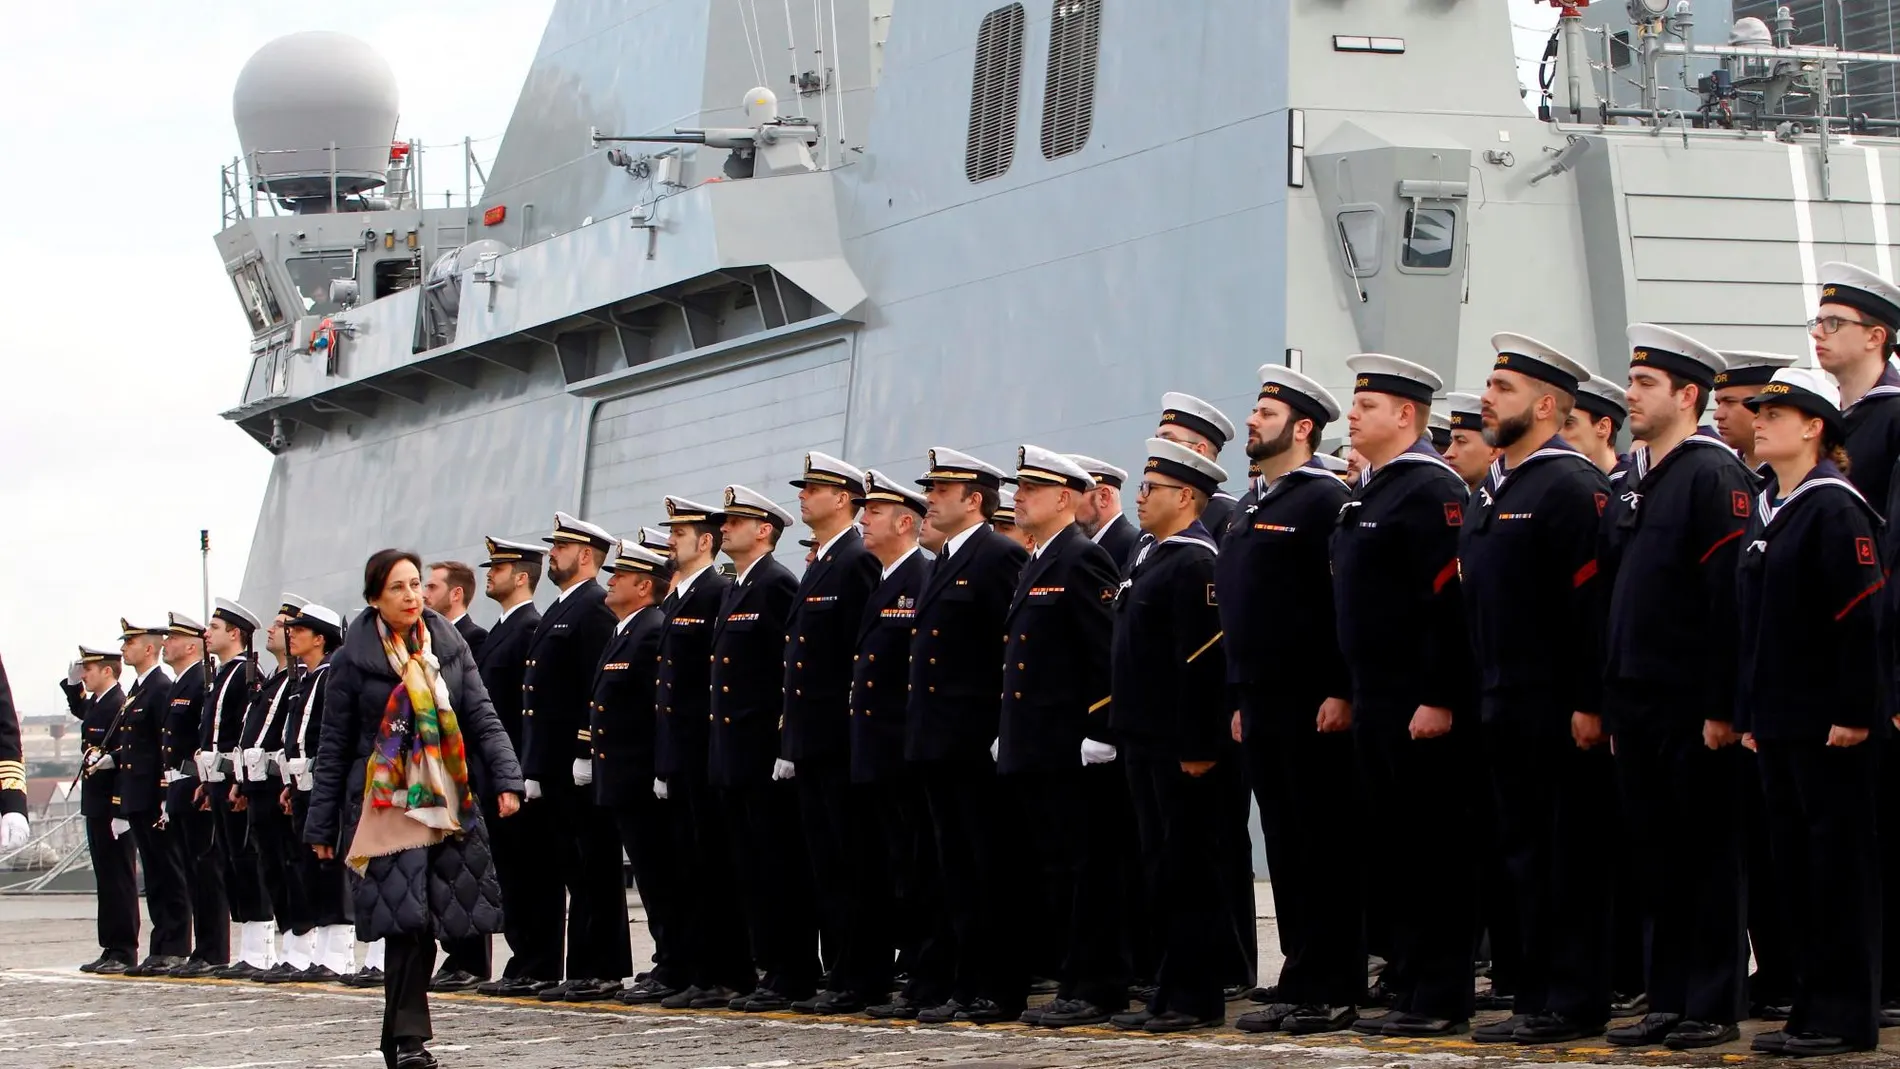 La ministra de Defensa, Margarita Robles, presidiendo el acto de entrega a la Armada del buque "Furor"